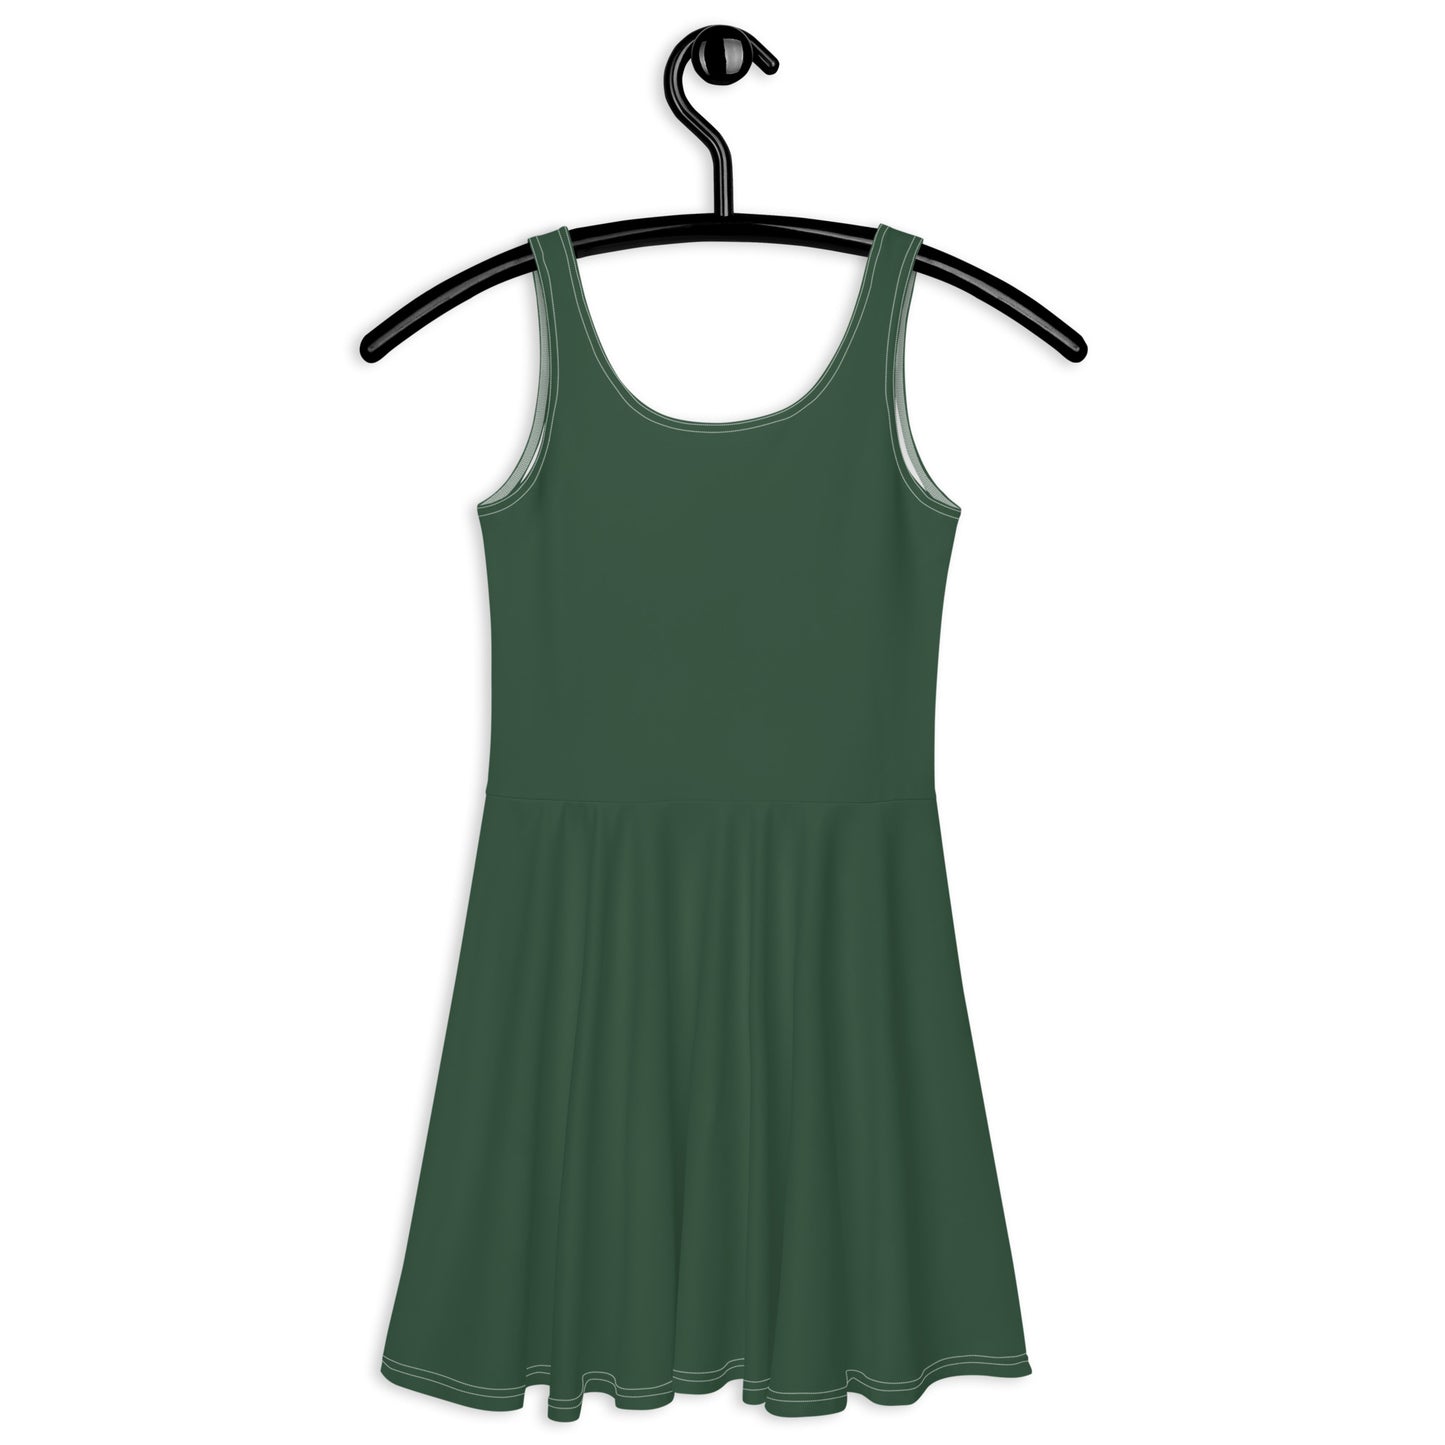 BASIC forest - Skater Dress